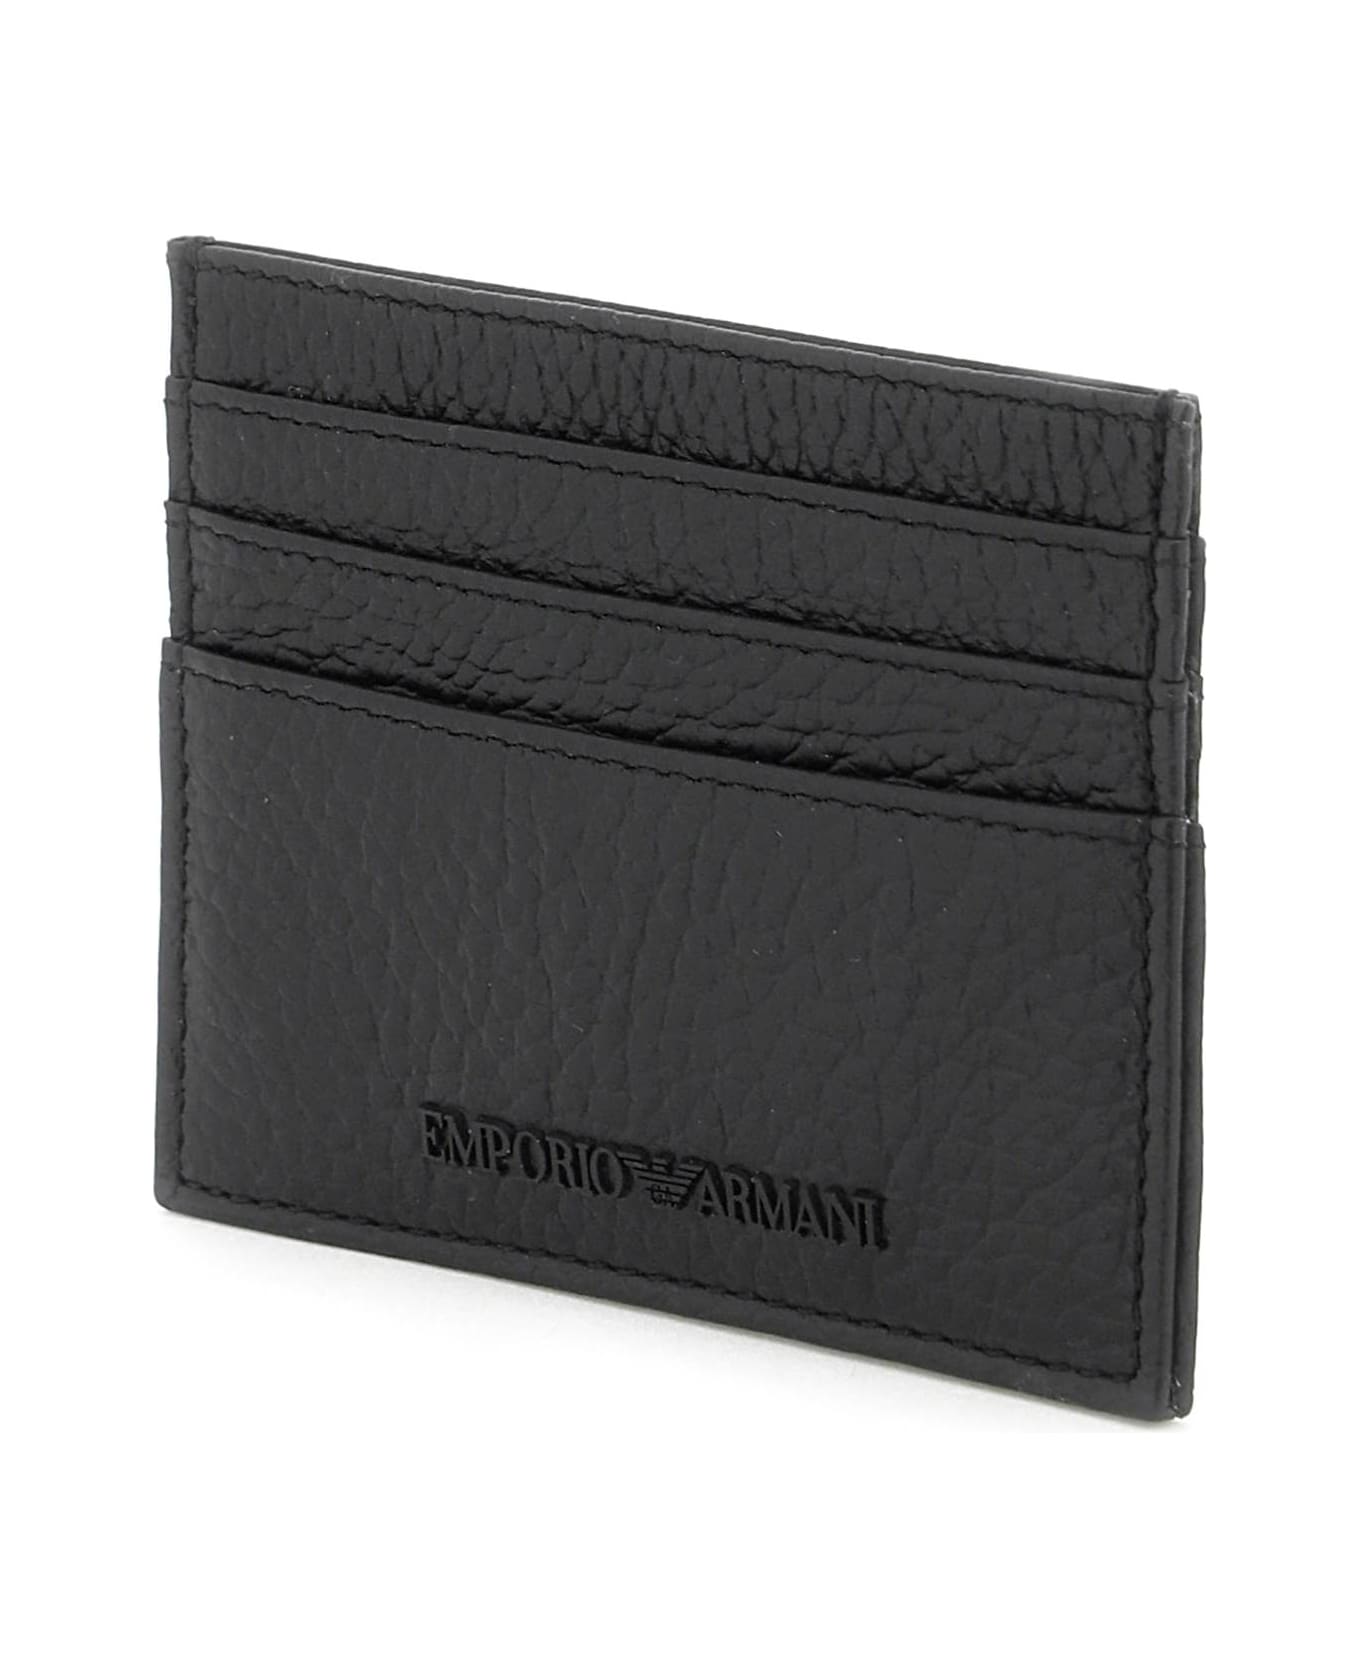 Emporio Armani Grained Leather Cardholder - Nero 財布